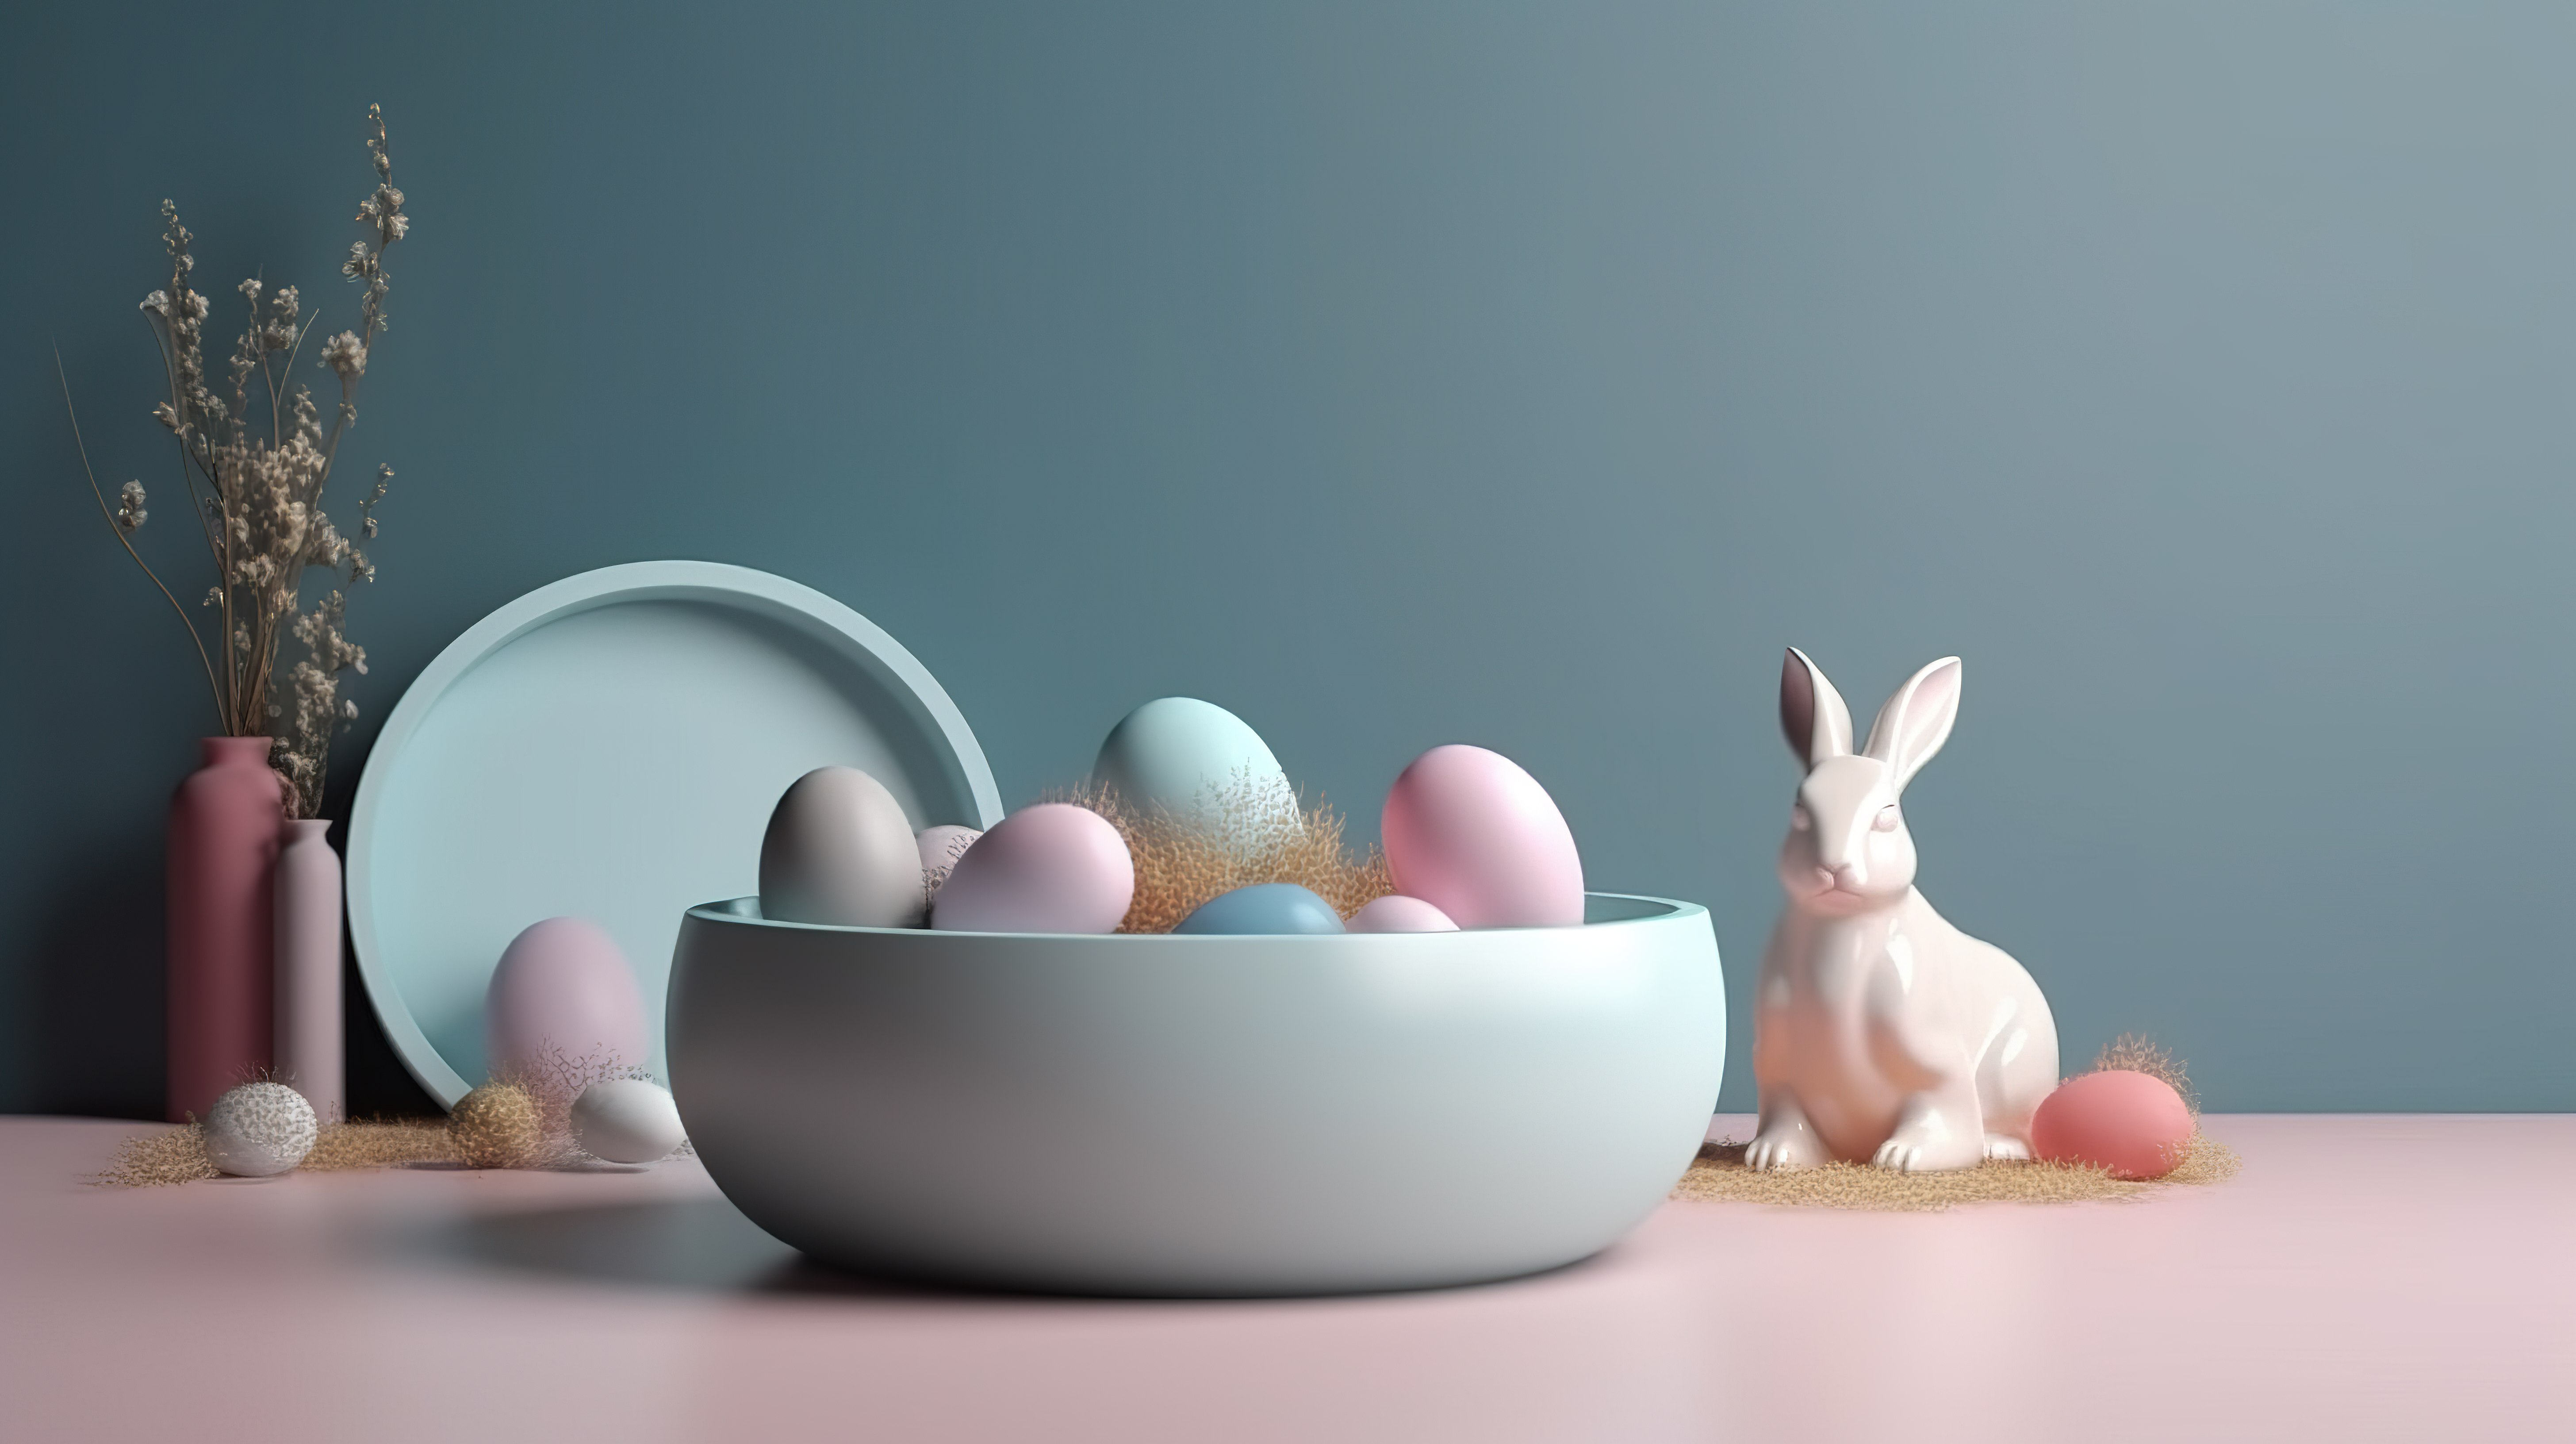 复活节主题的 3D 产品展示台装饰着兔子和彩蛋图片